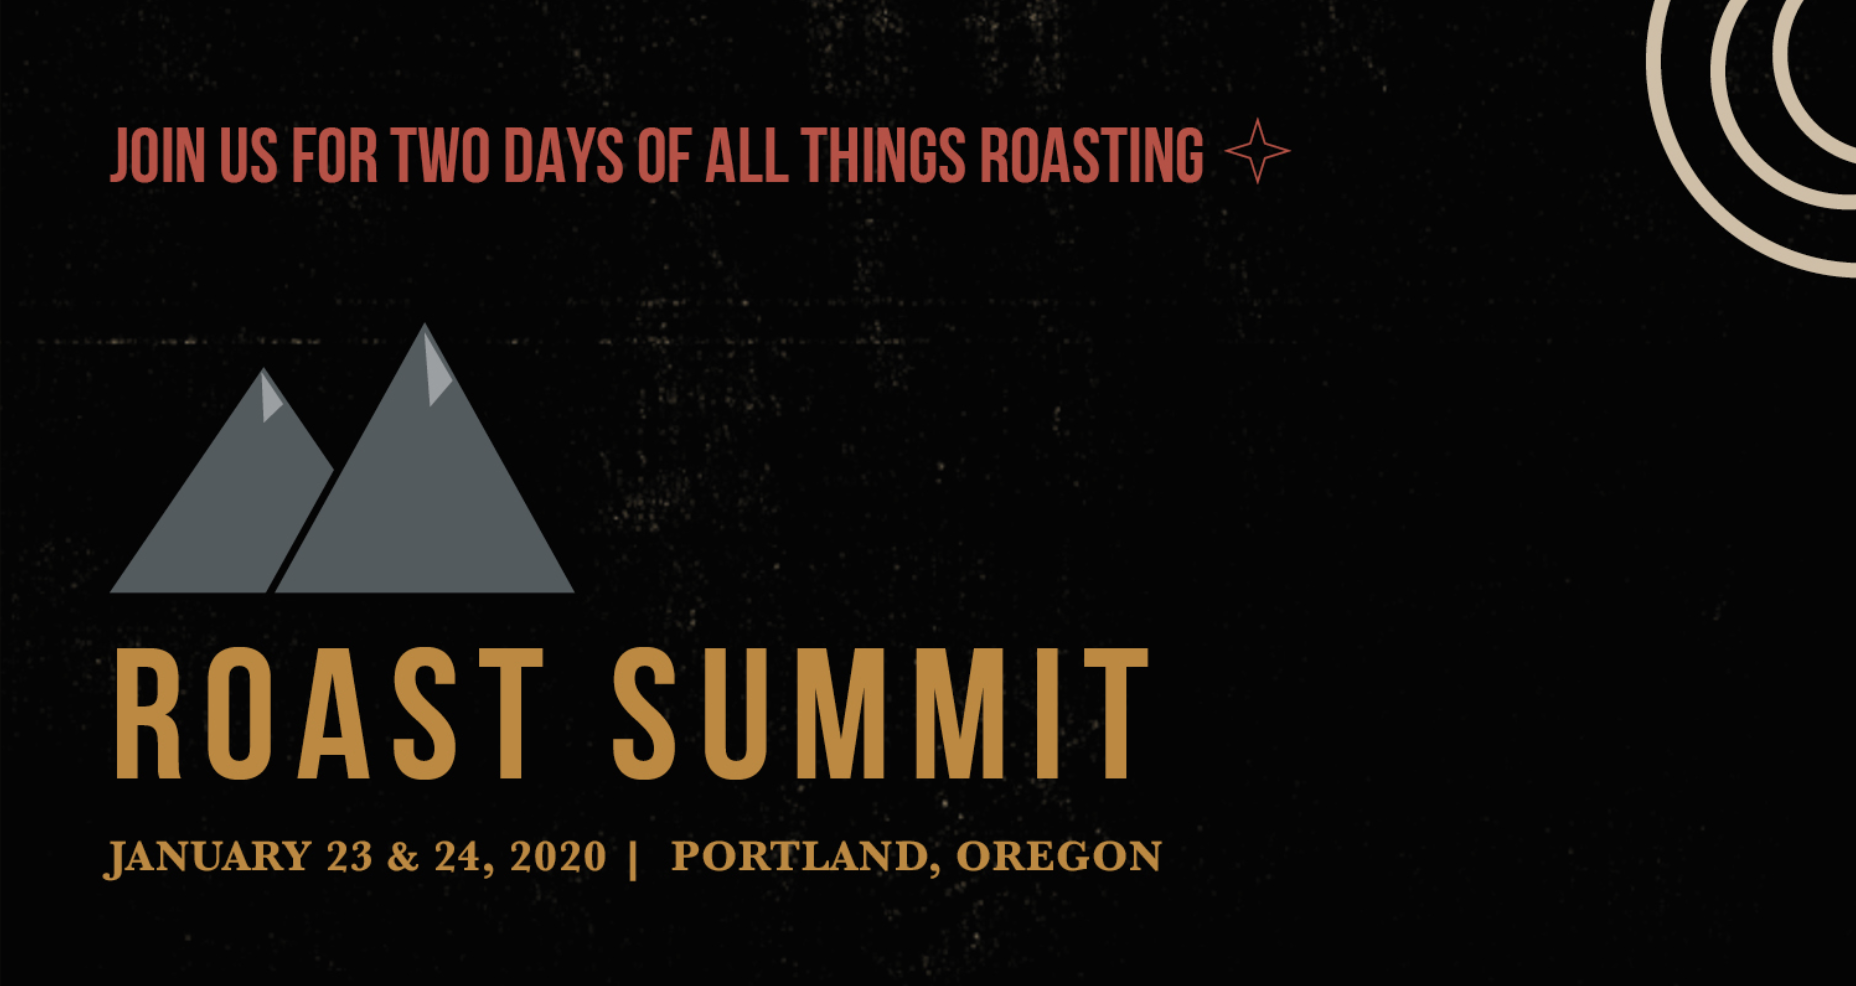 Roast Summit